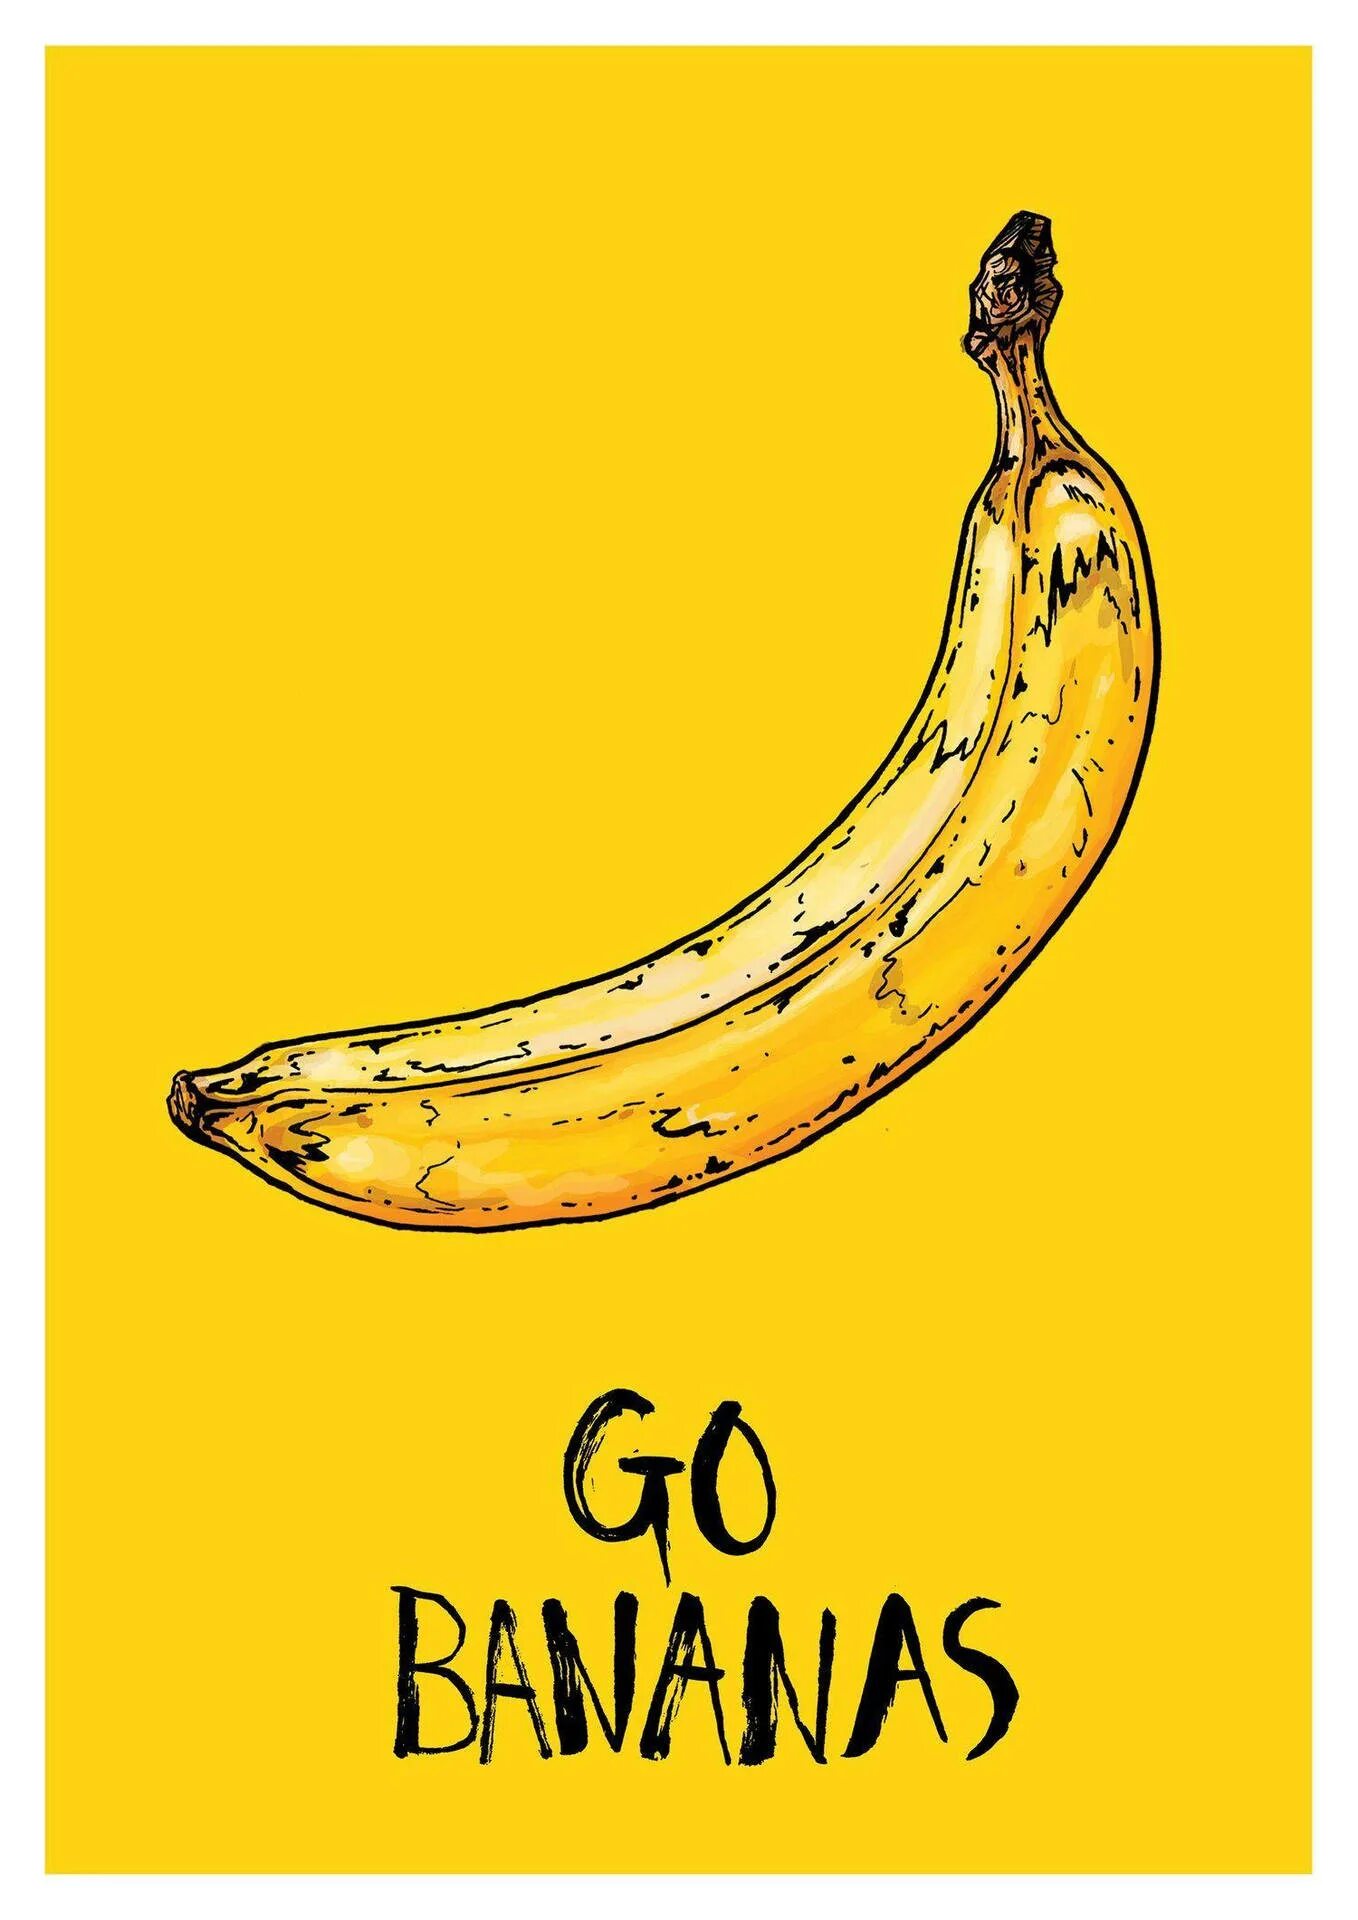 Go bananas. Банан. Го банана. Банан Art. Стилизованный банан.